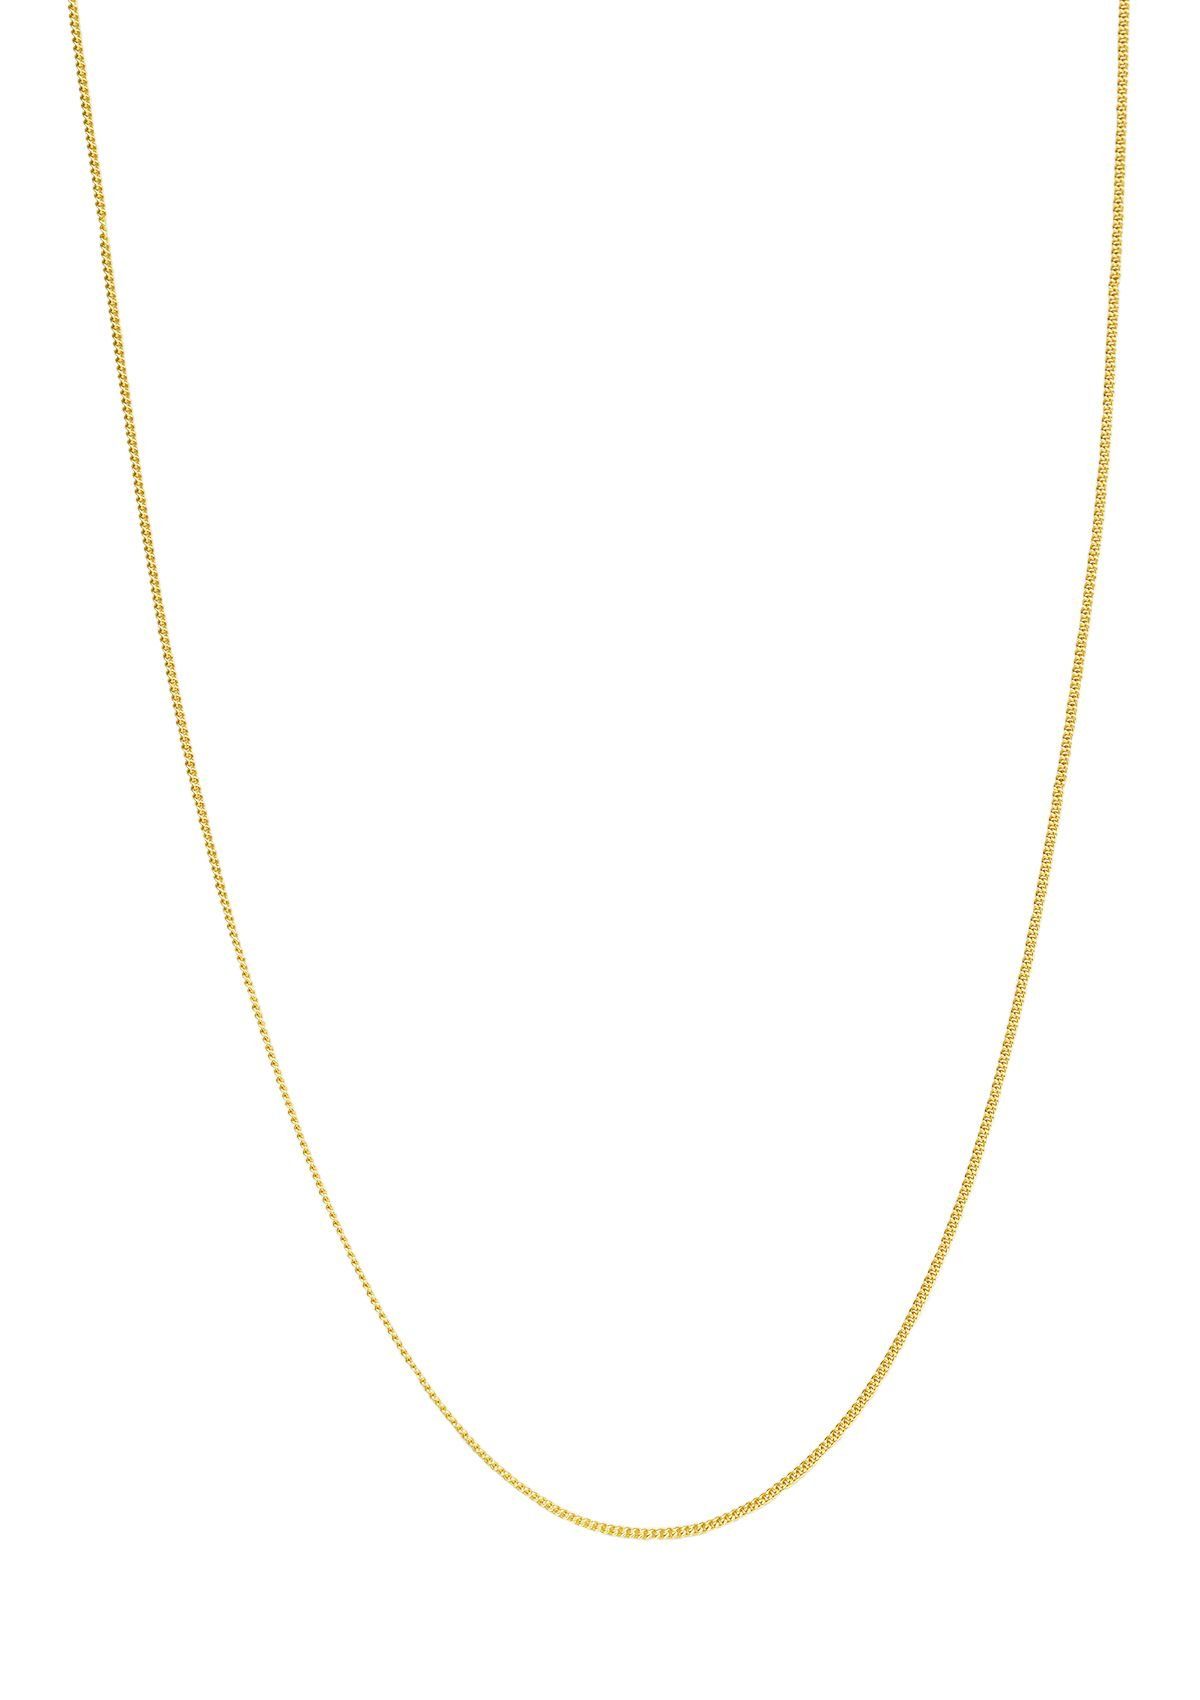 Hey Happiness Silberkette 925 Damen fein strukturiert Vergoldet 18K, Silber Halskette Layer Look zum Kombinieren, hypoallergen | Silberketten